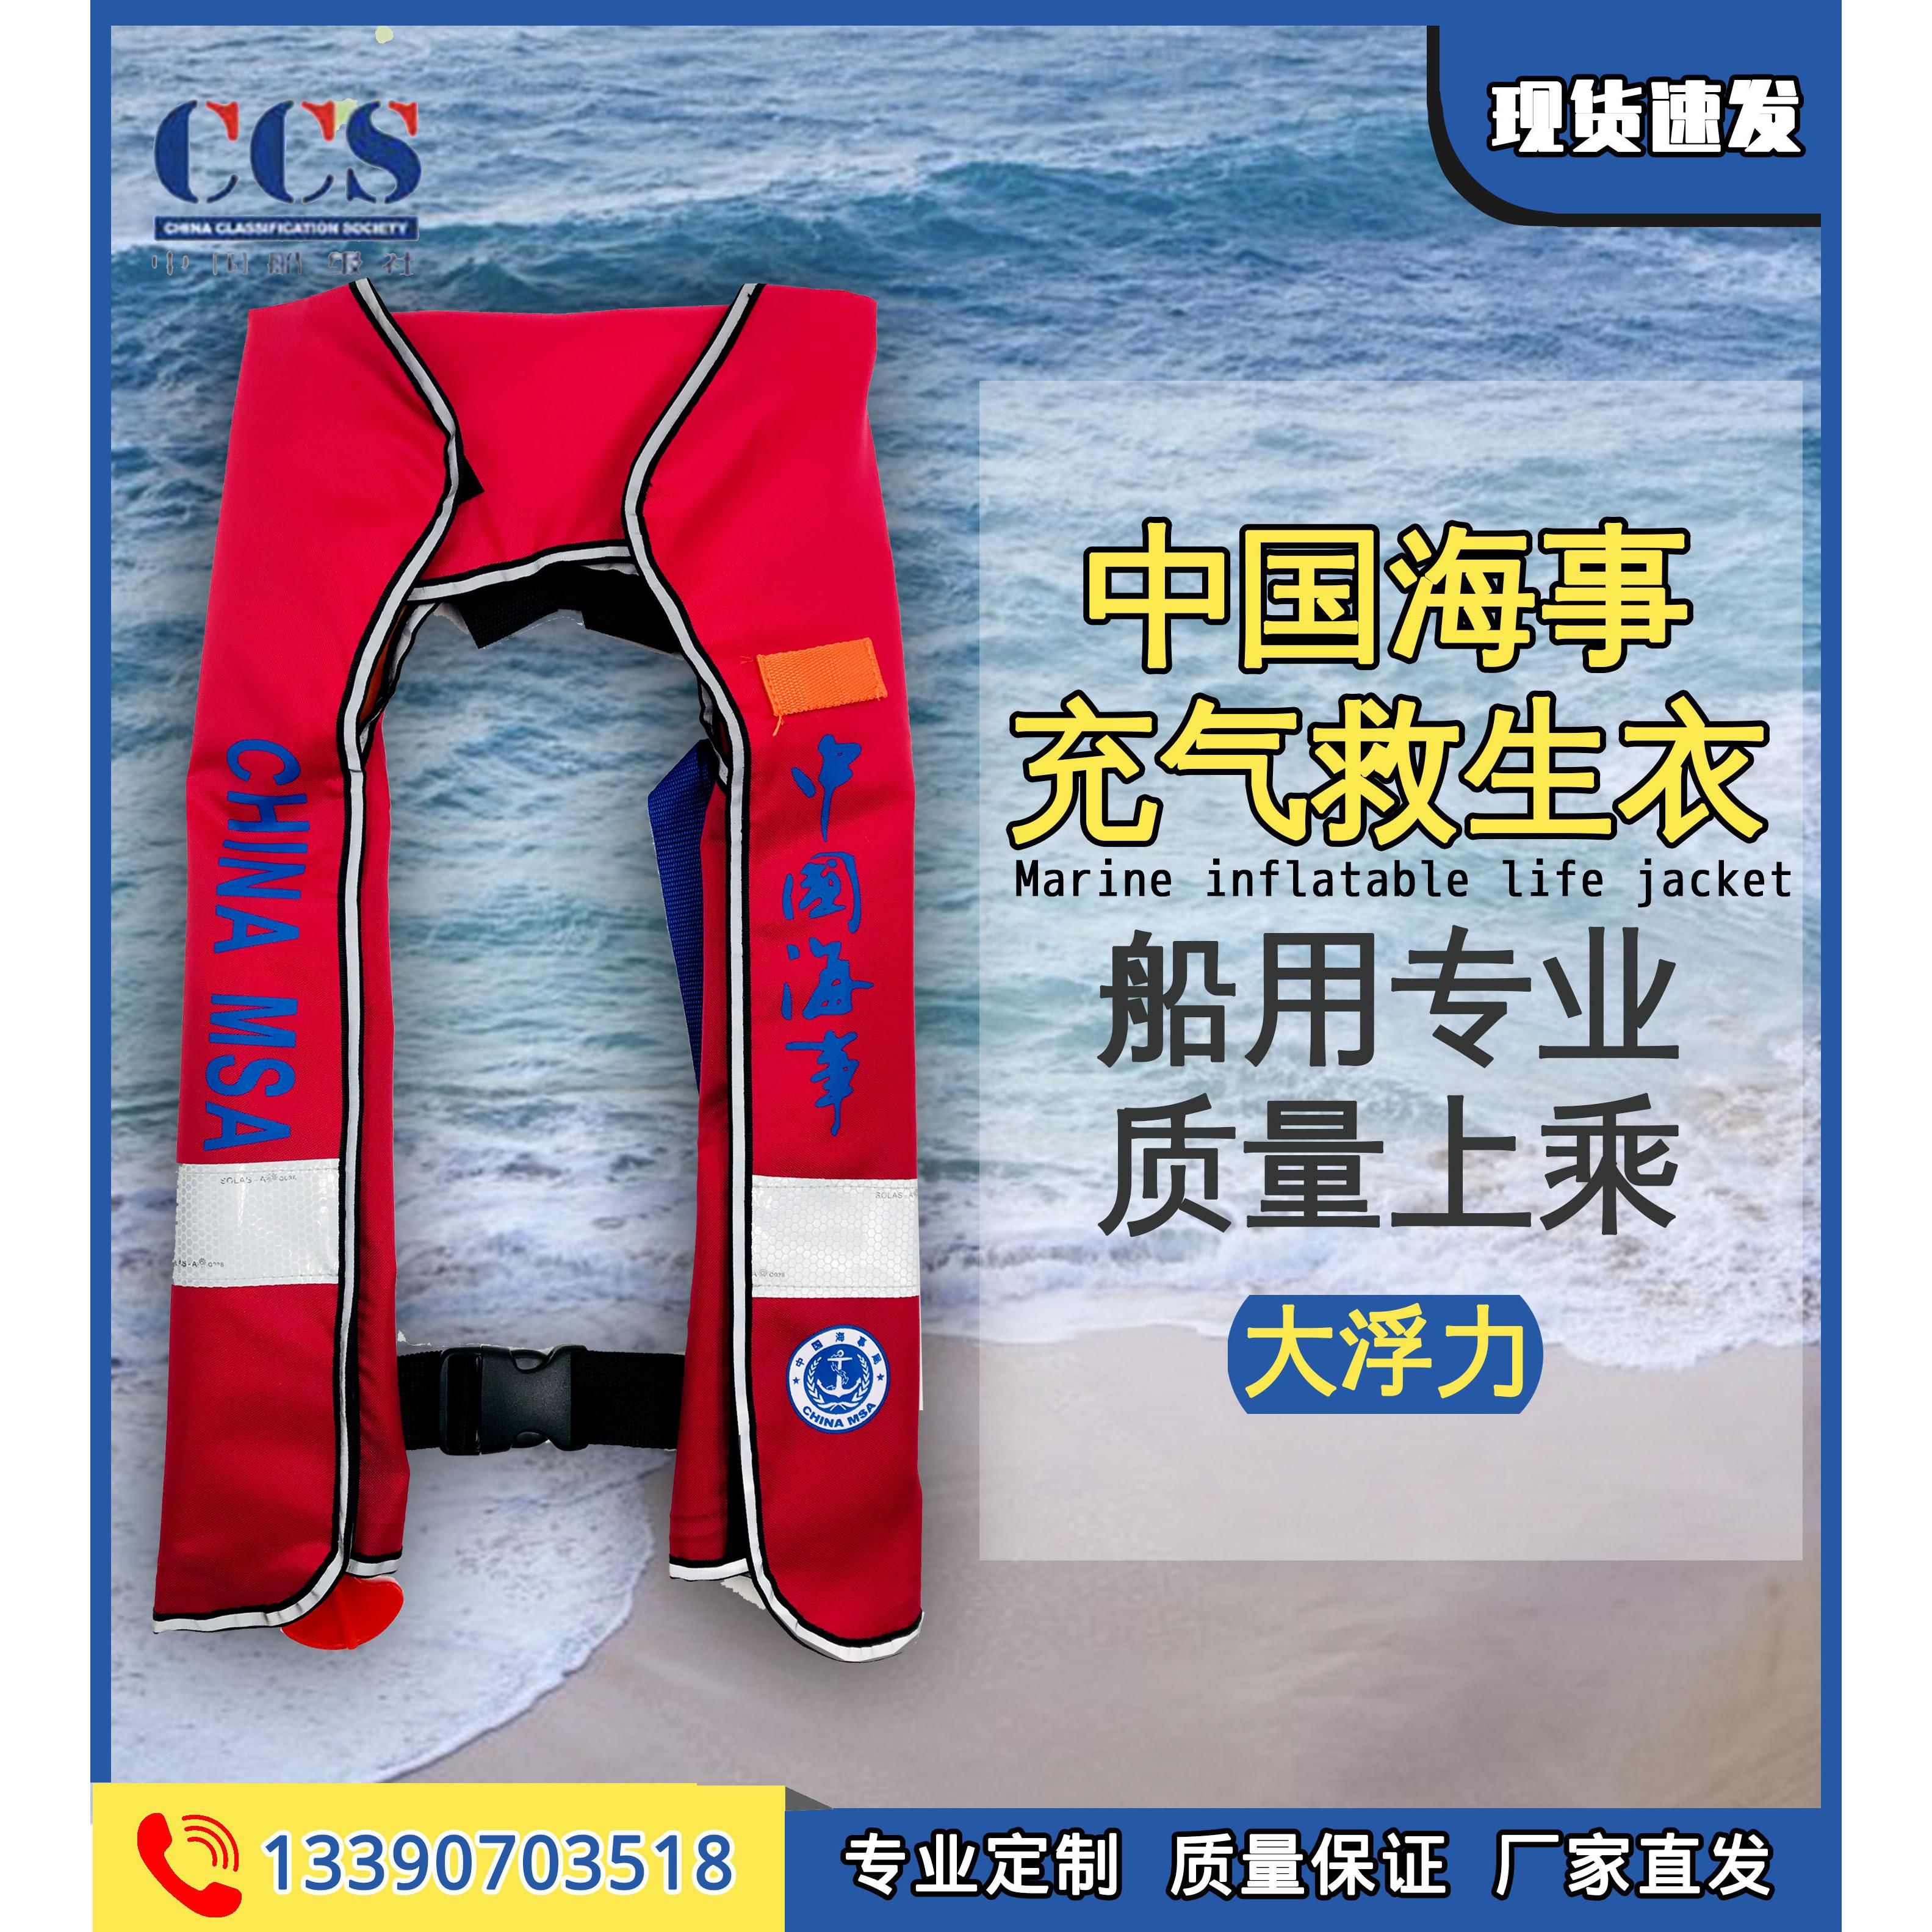 中国海事款专用充气式救生衣CCS 渔政工作用检查 便携挂脖式膨胀